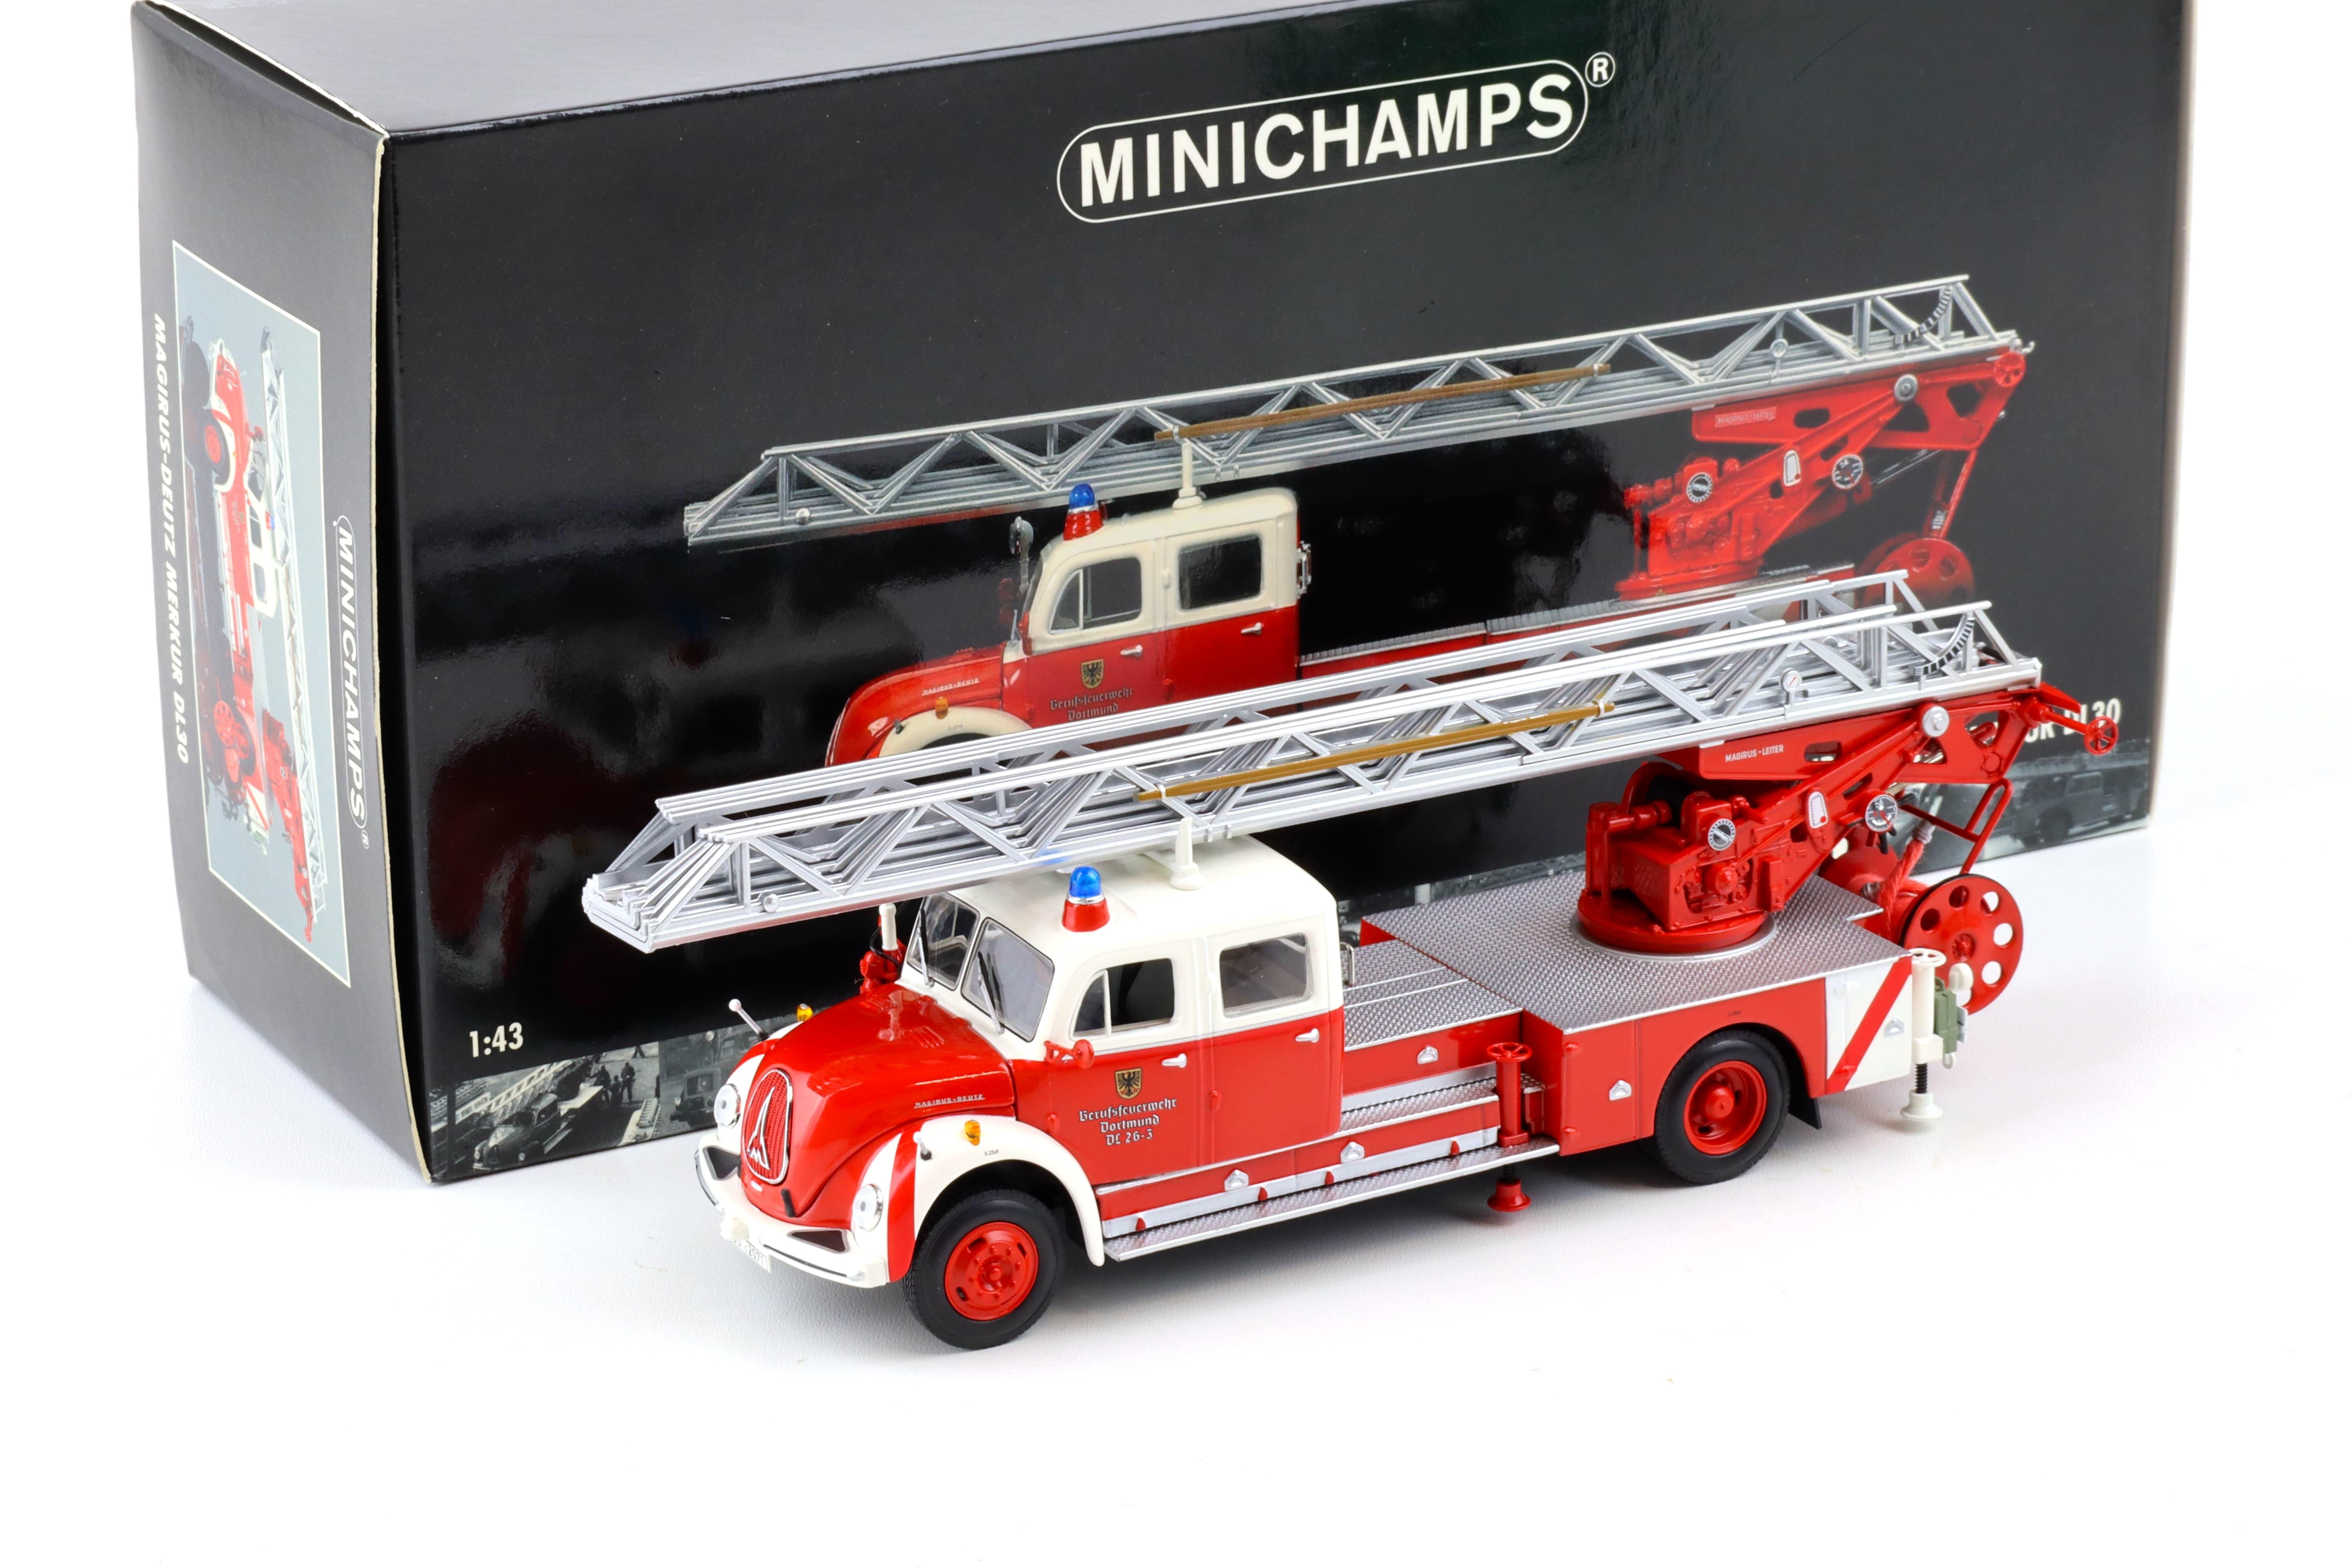 1:43 Minichamps Magirus-Deutz Merkur DL30 Drehleiter Feuerwehr Dortmund red/white